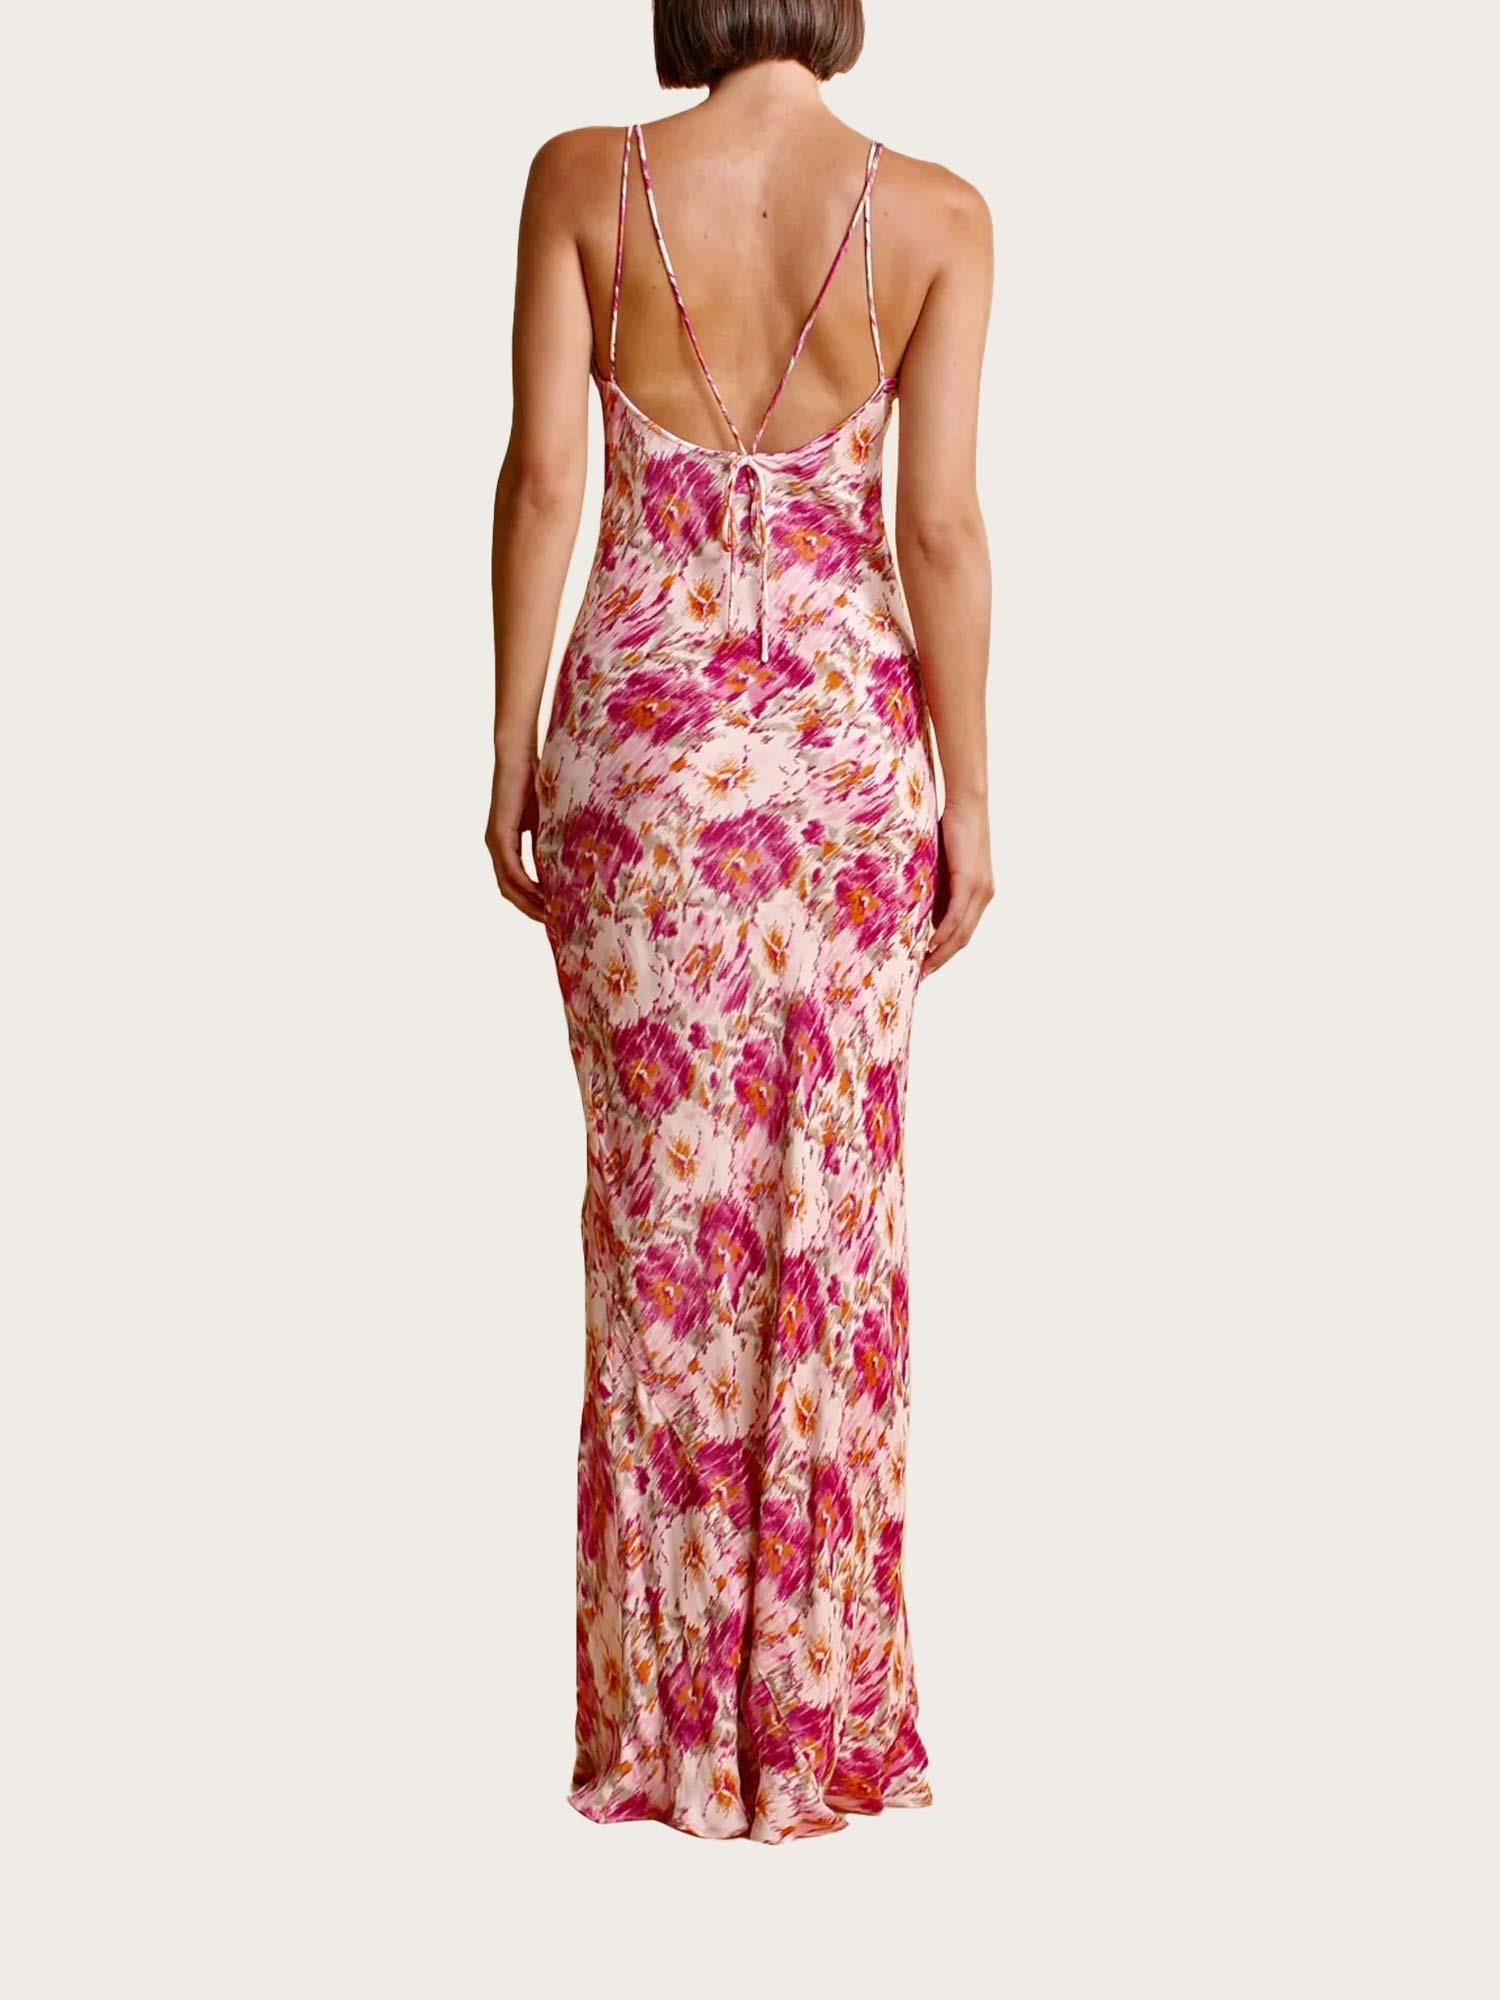 Crepe Satin Strap Dress - Blushed Blossom